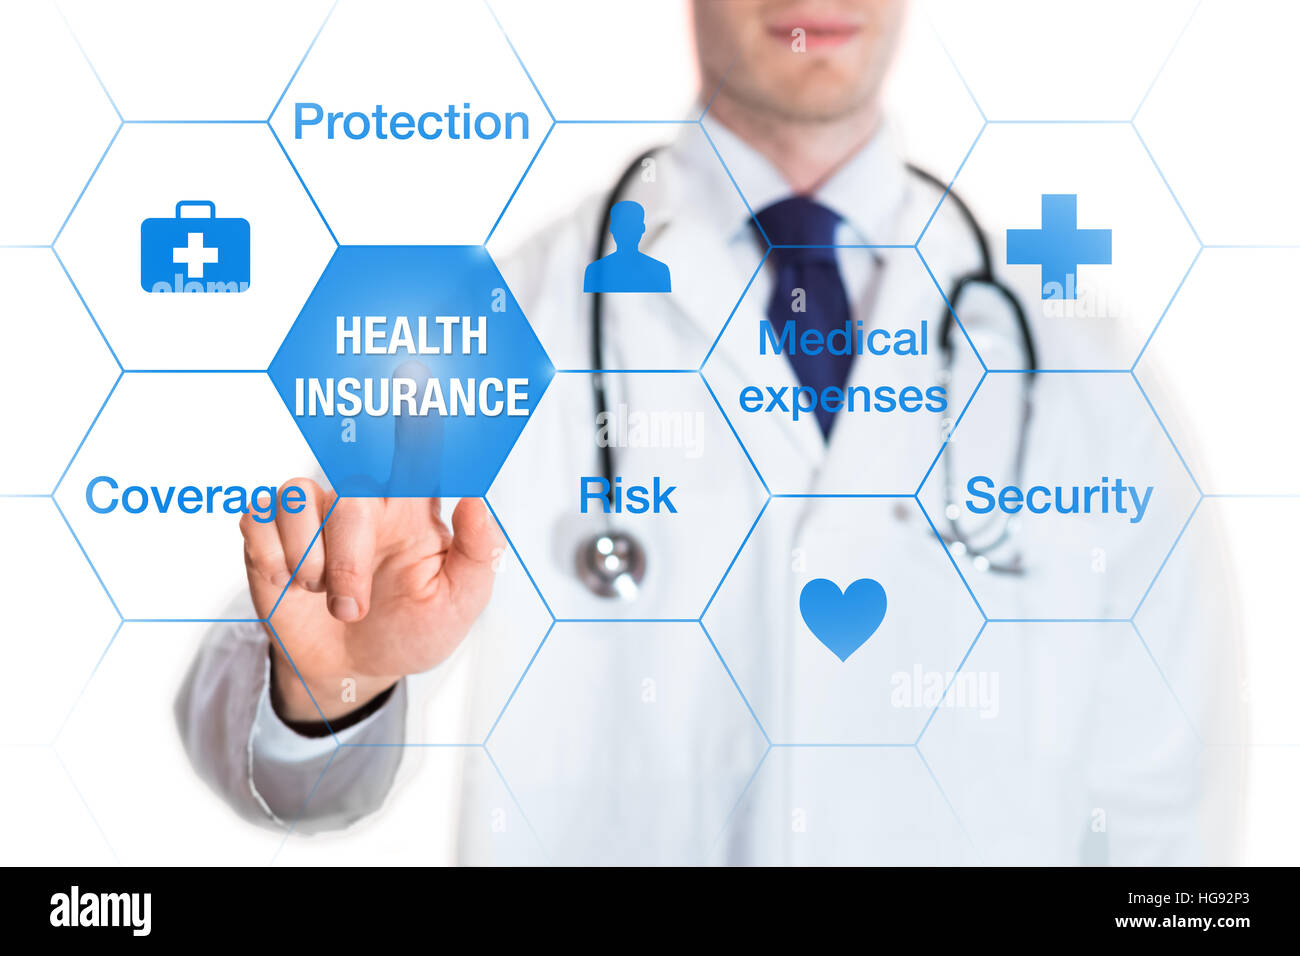 Concepto de seguros de salud con cobertura de palabras, la protección, el riesgo y la seguridad en una pantalla virtual y un médico de tocar un botón Foto de stock